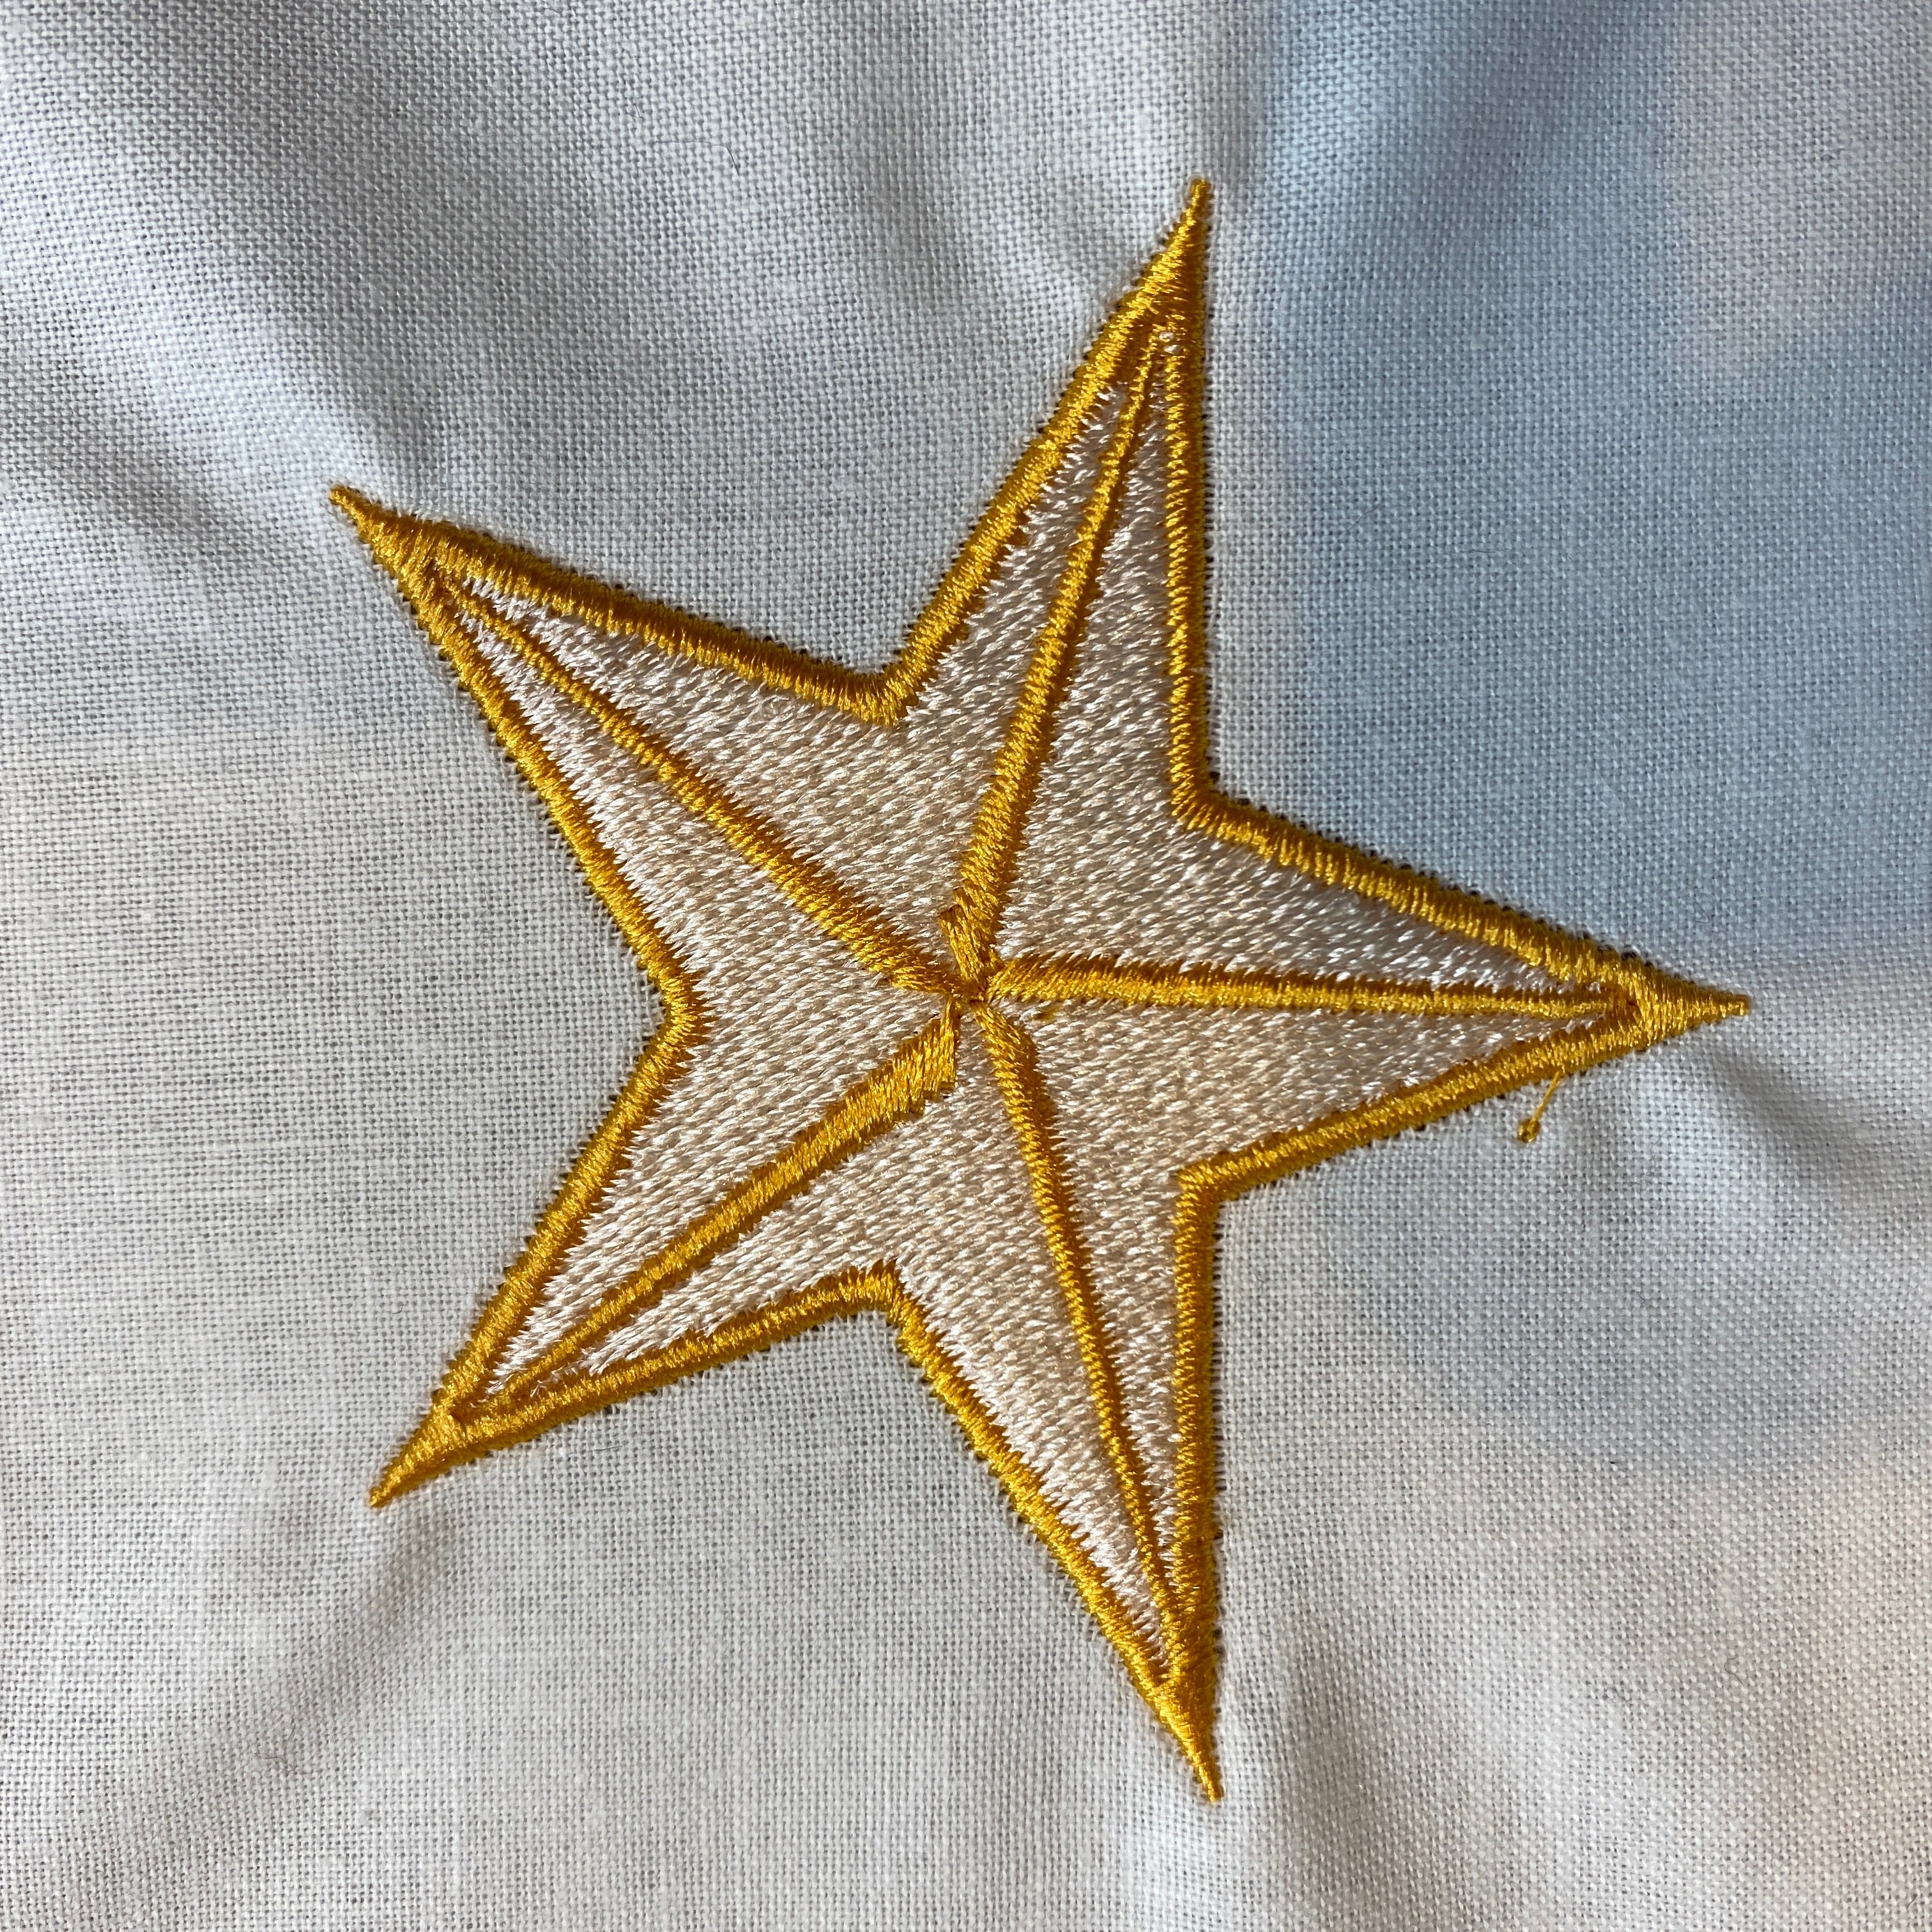 Star Stripe Embroidery Design